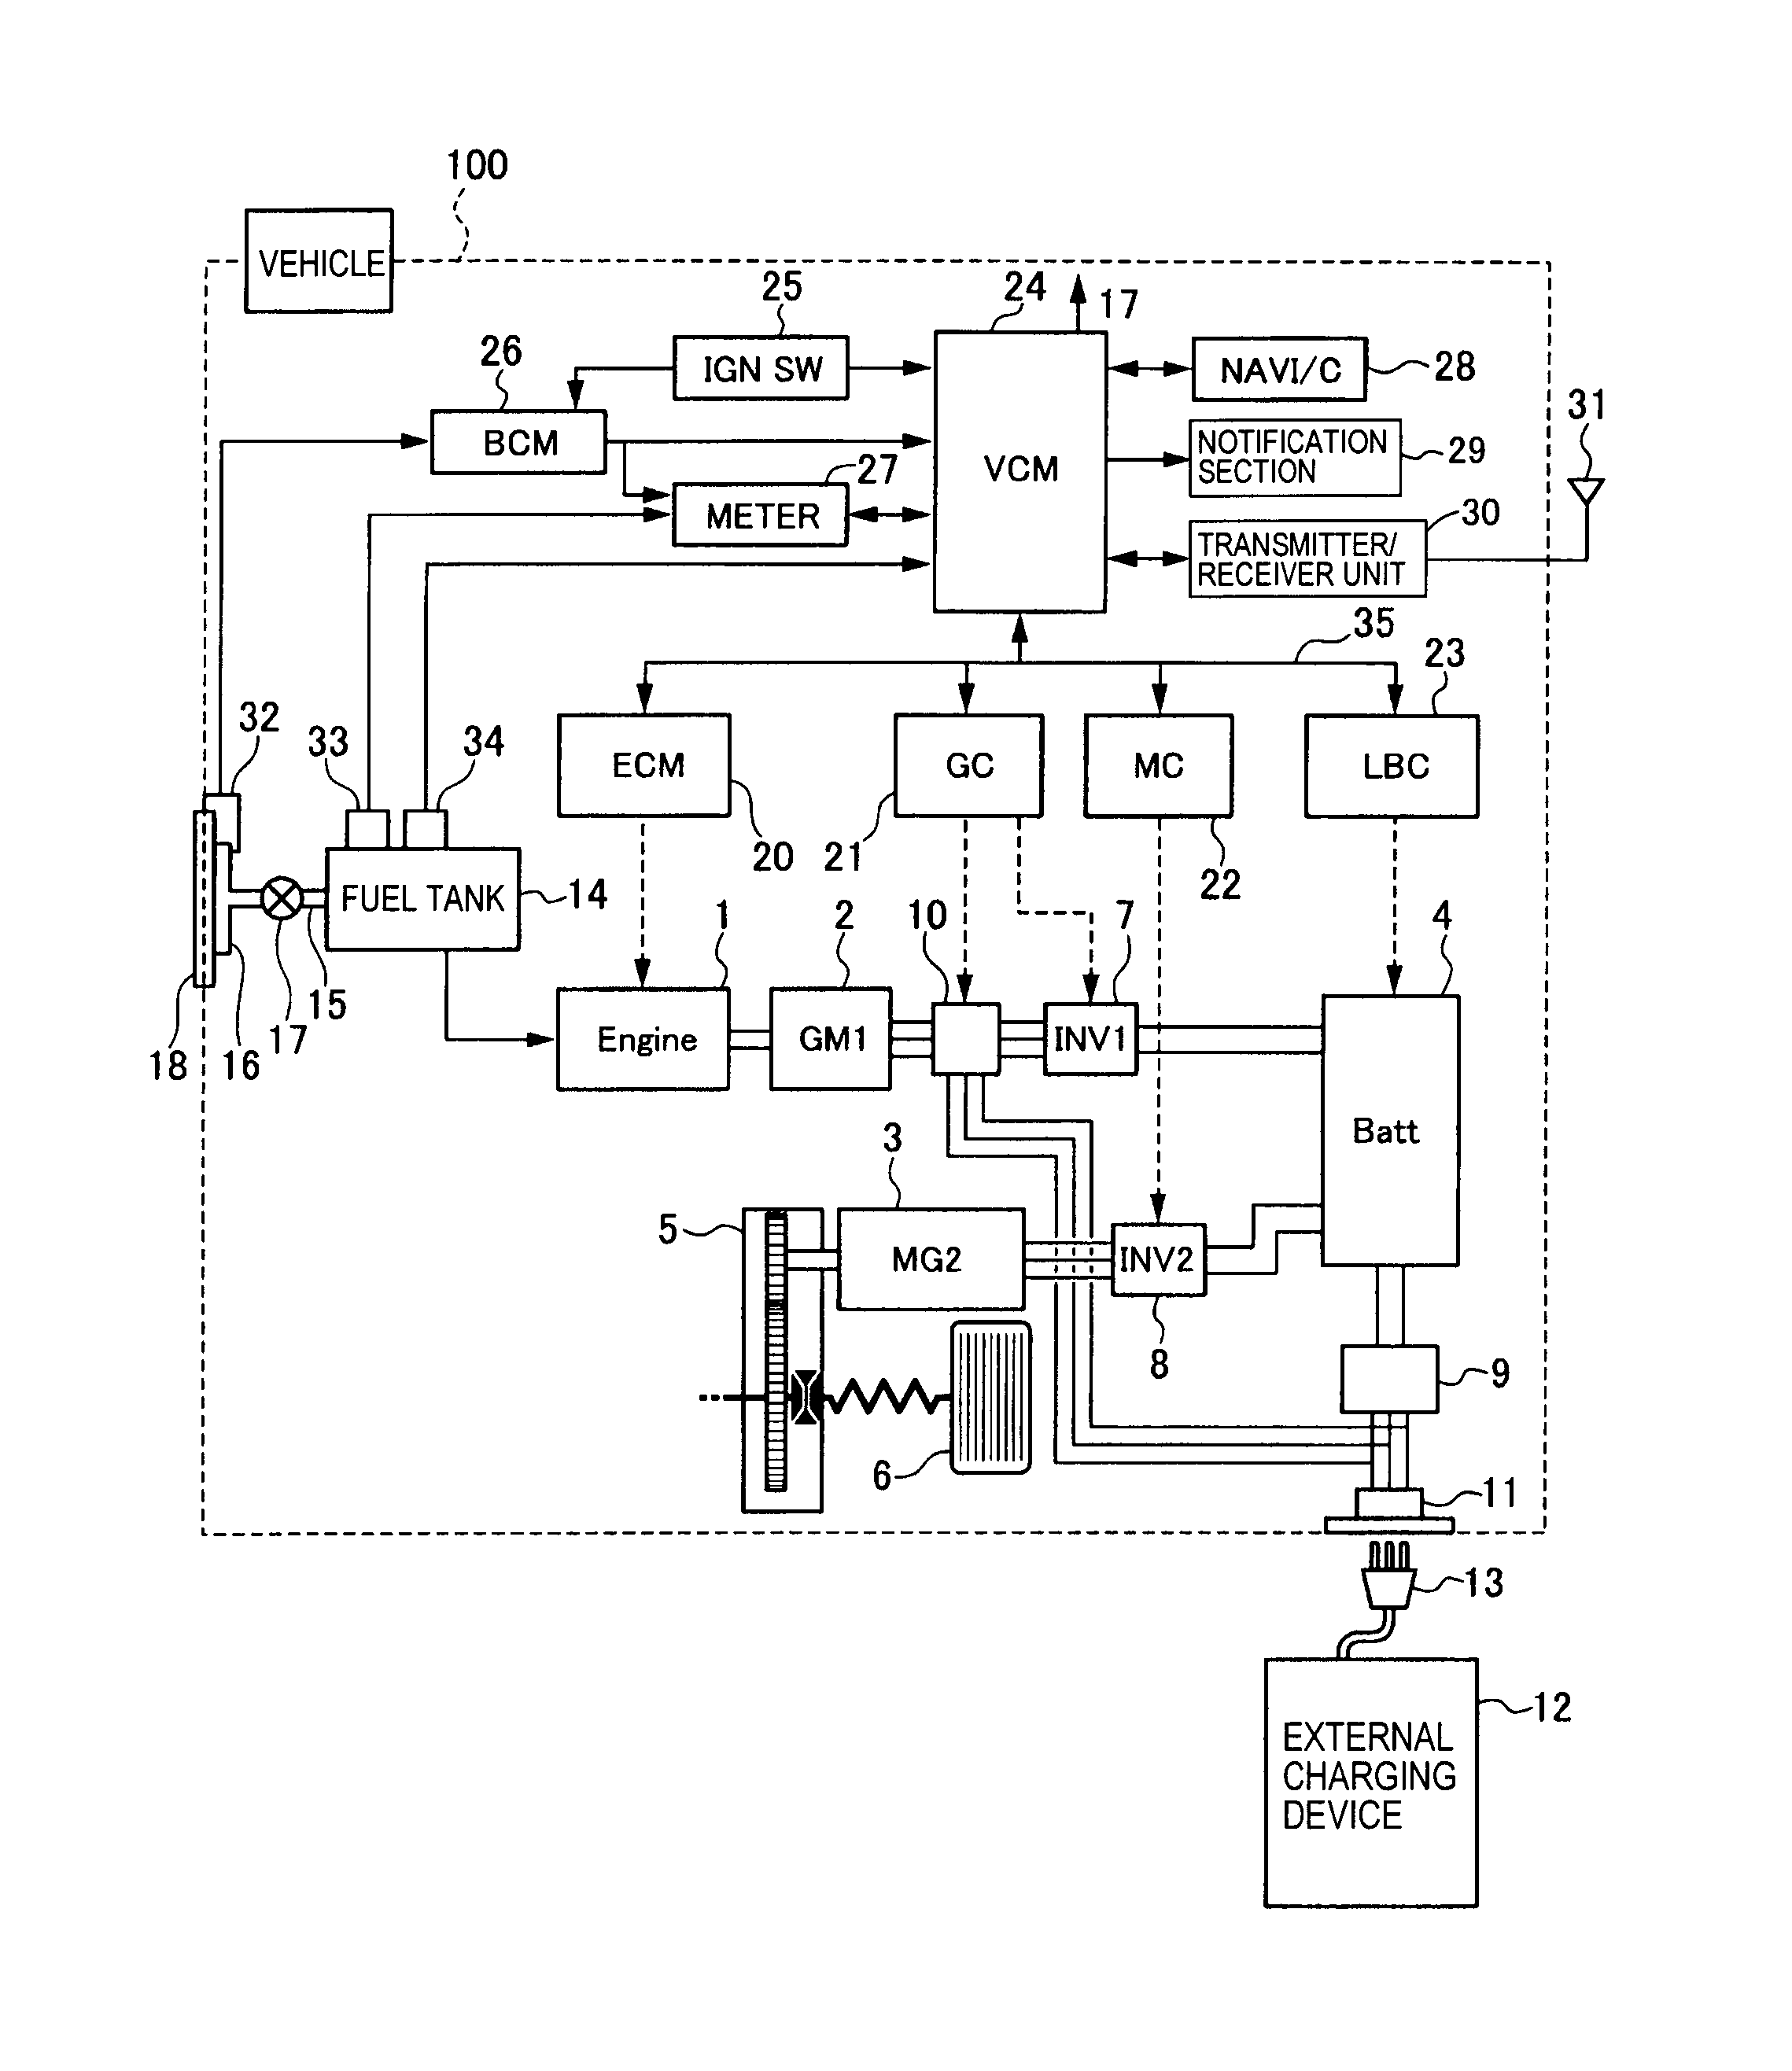 lutron maestro occupancy sensor wiring diagram